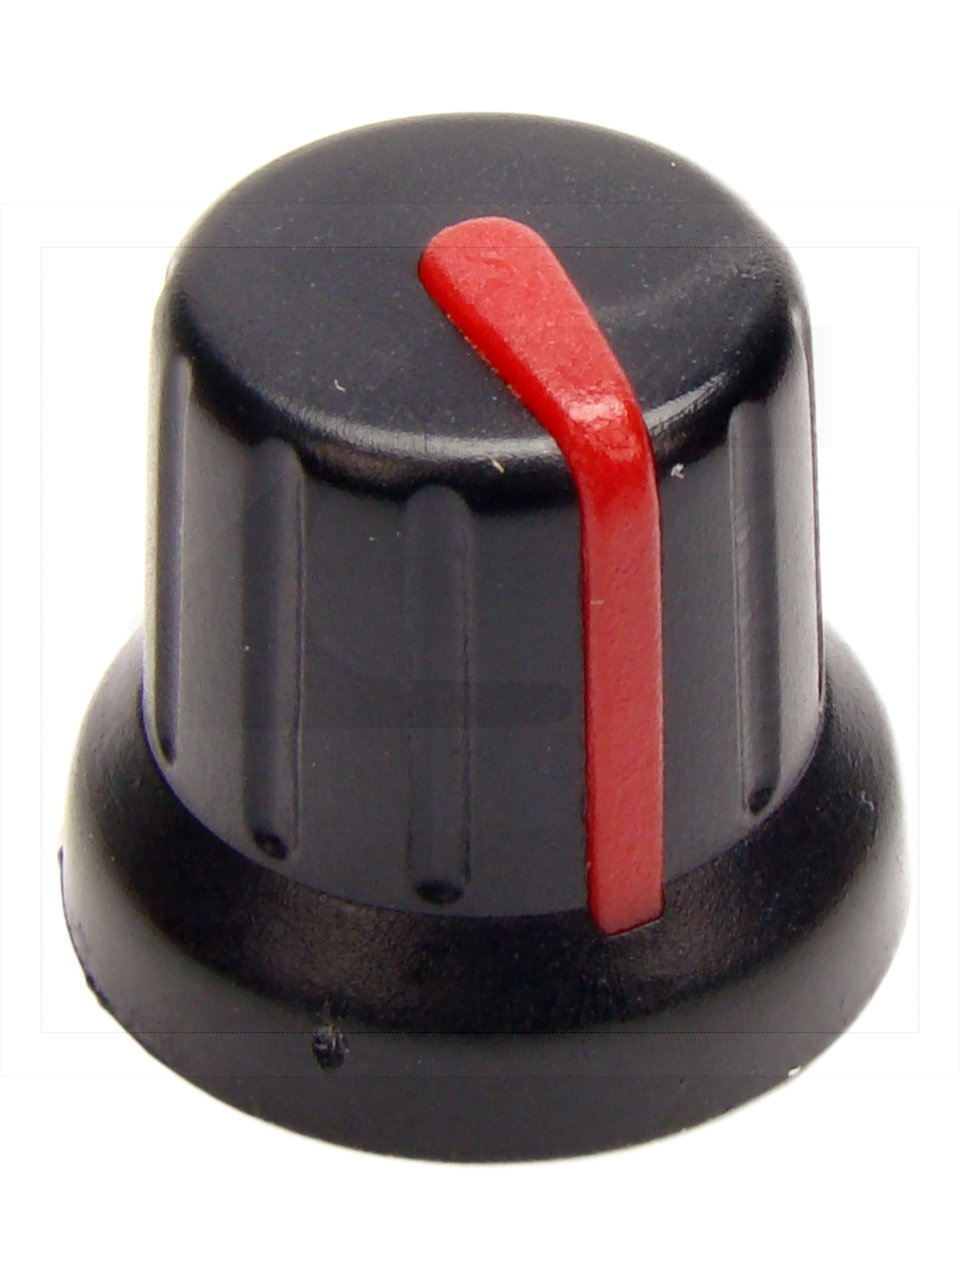 Pokrętło N-4 znacznik czerwony; średnica osi 6mm;fi 16x14mm;